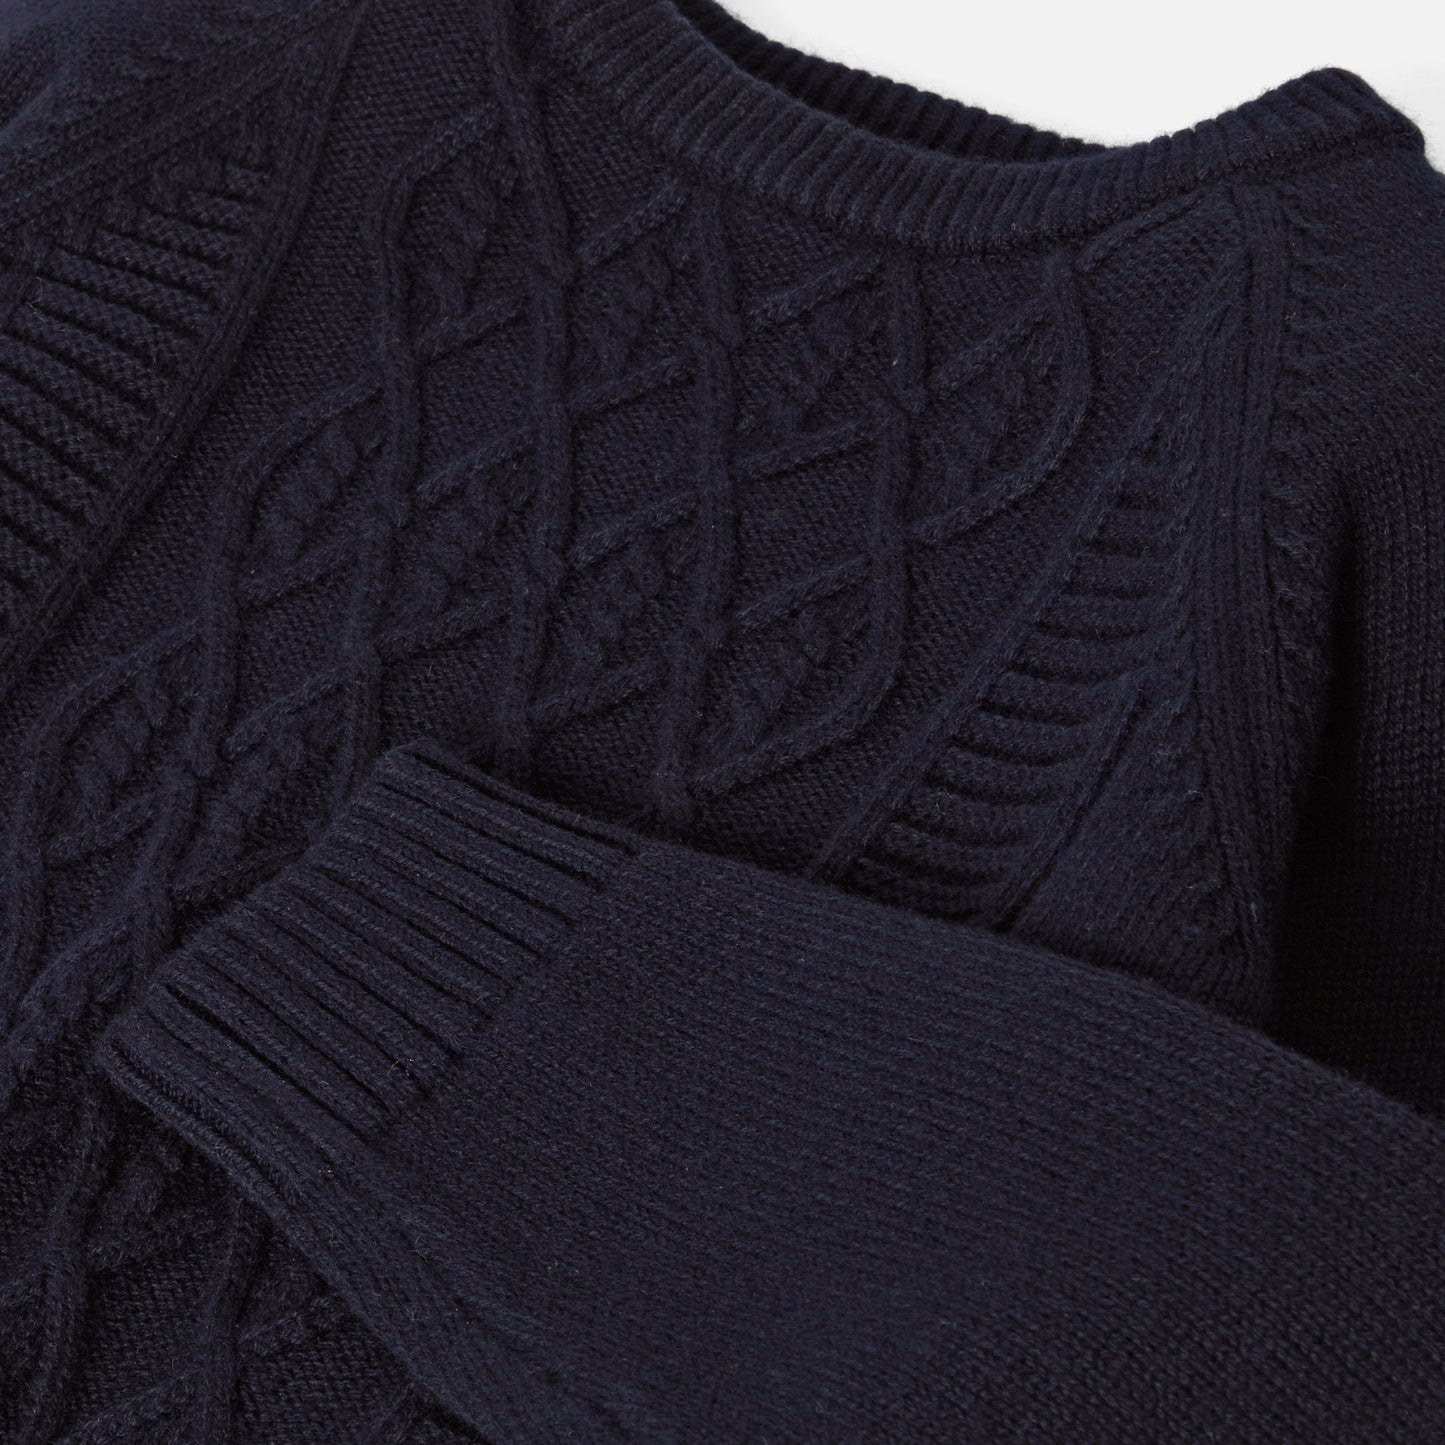 ケーブル編みセーター